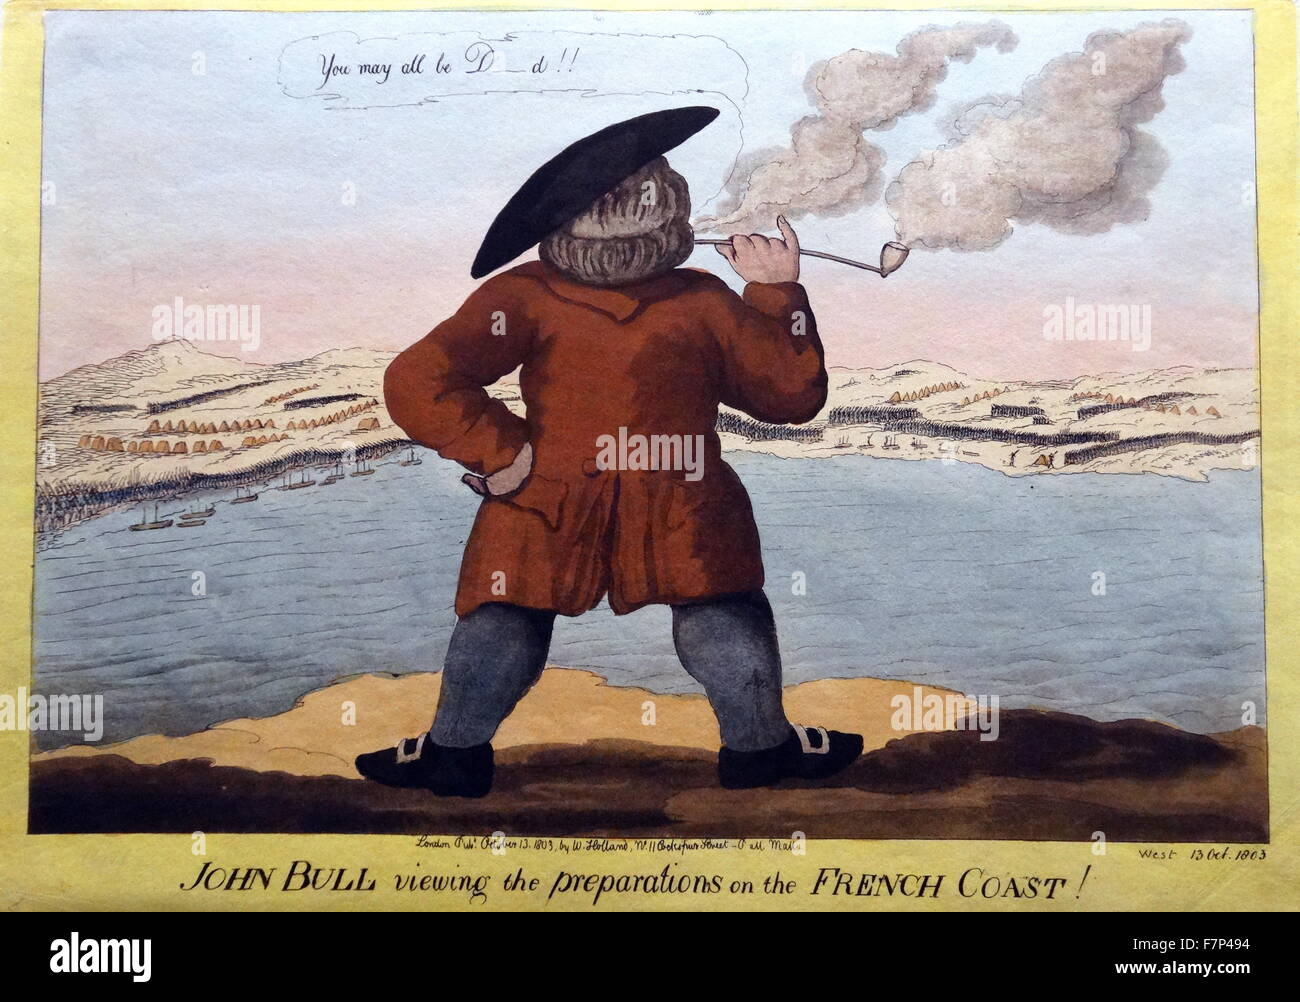 Handkolorierten Radierung und Aquatinta von William Holland veröffentlicht mit dem Titel "John Bull anzeigen die Vorbereitungen an der französischen Küste". Datiert 1803 Stockfoto